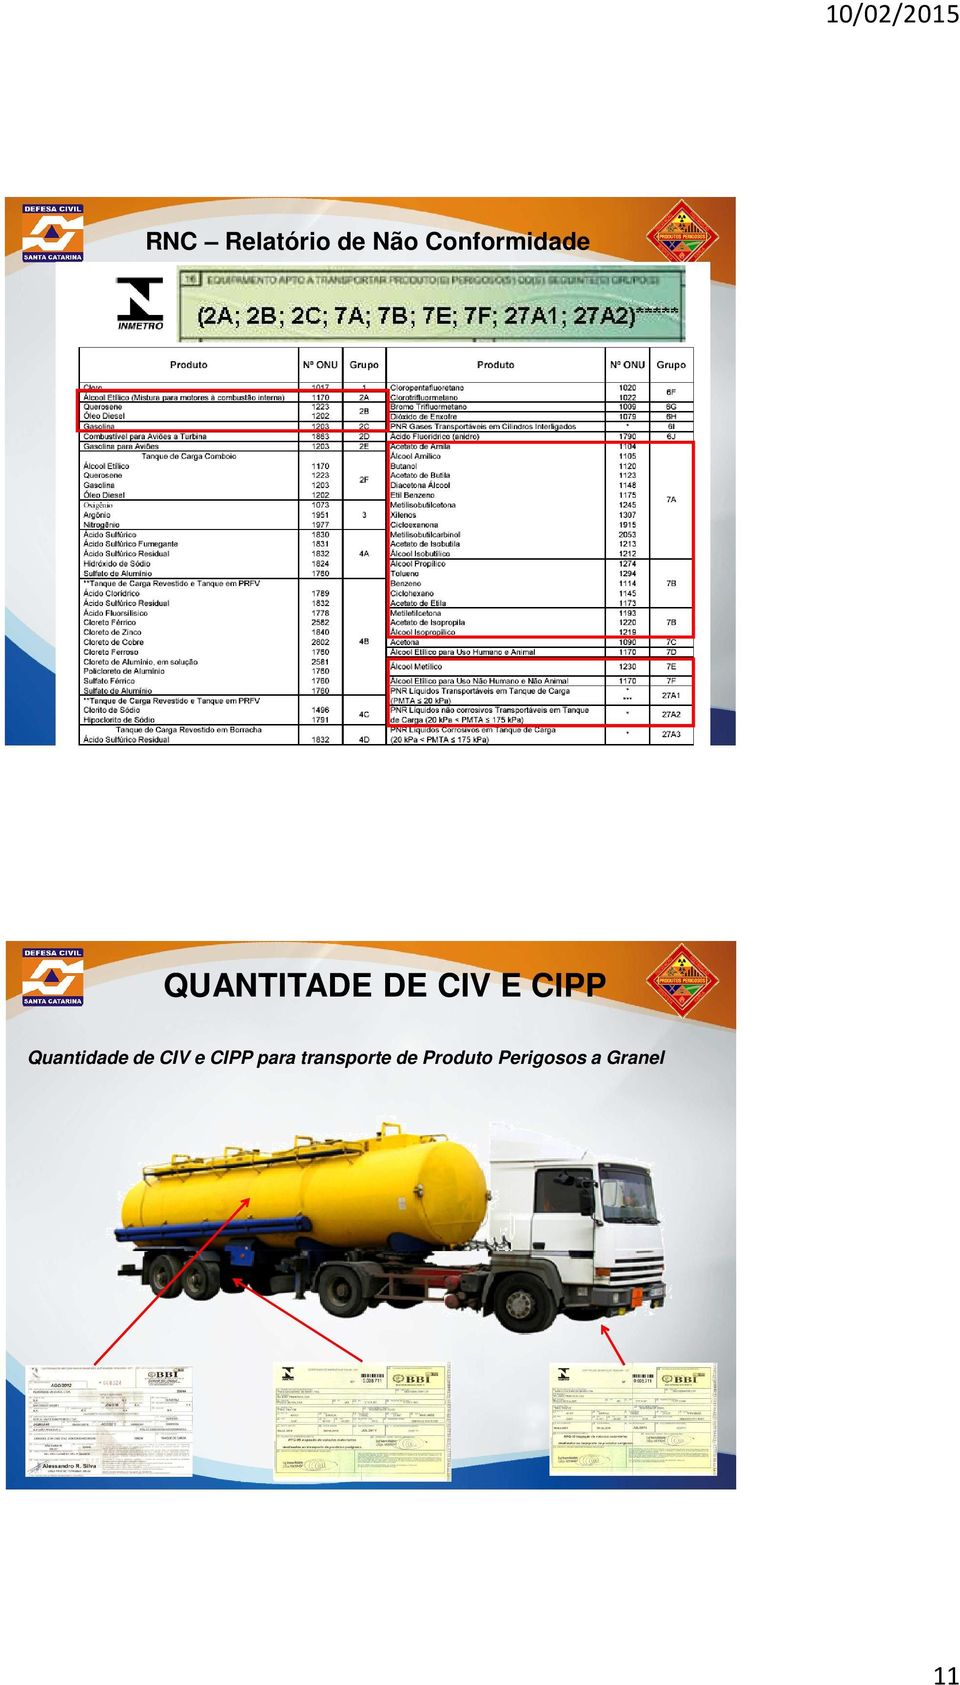 CIPP Quantidade de CIV e CIPP